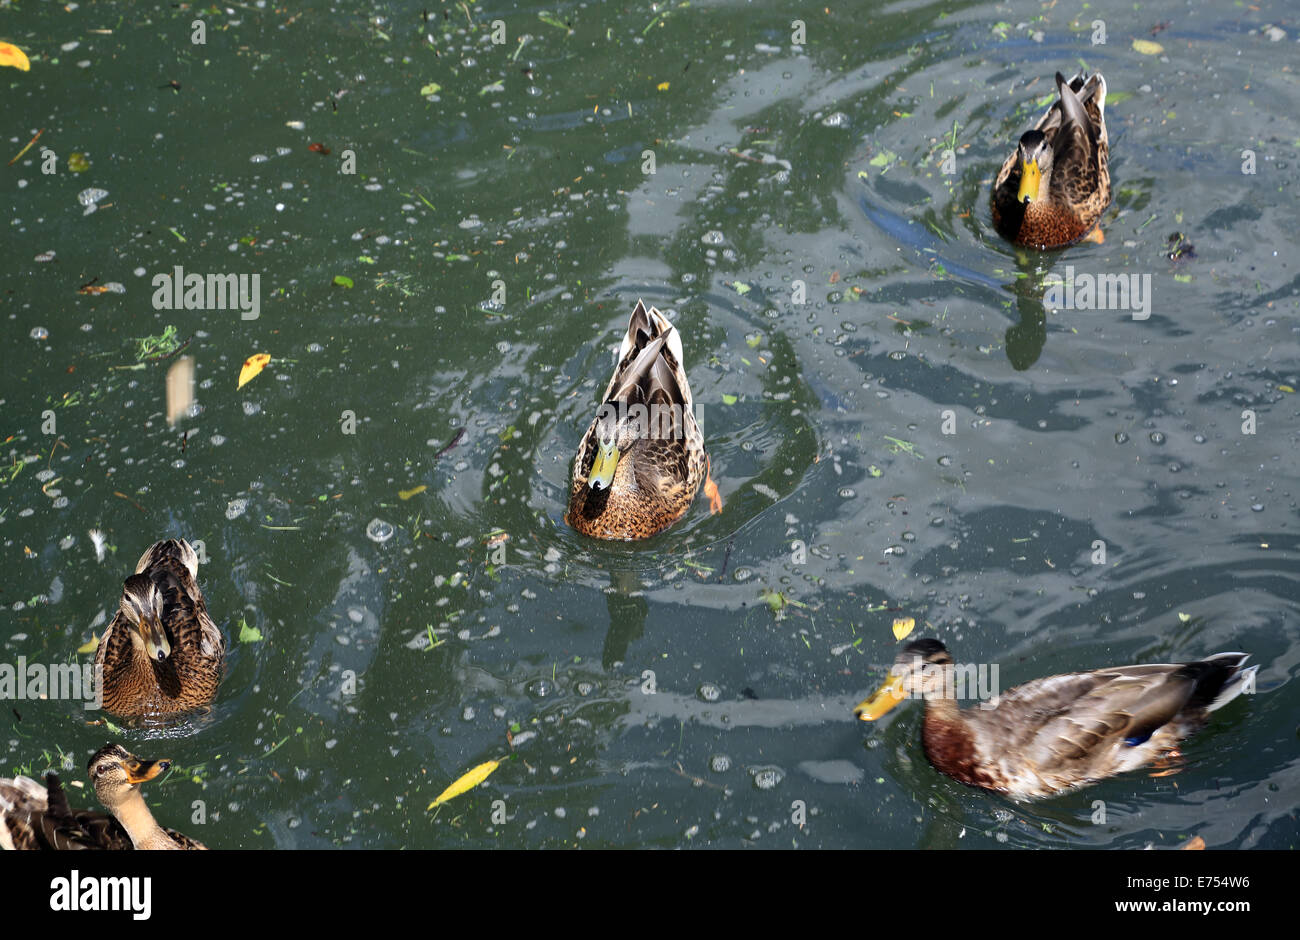 ducks on River Loir at Promenade de la Fontaine, Illiers Combray, Centre, Eure et Loir, France Stock Photo